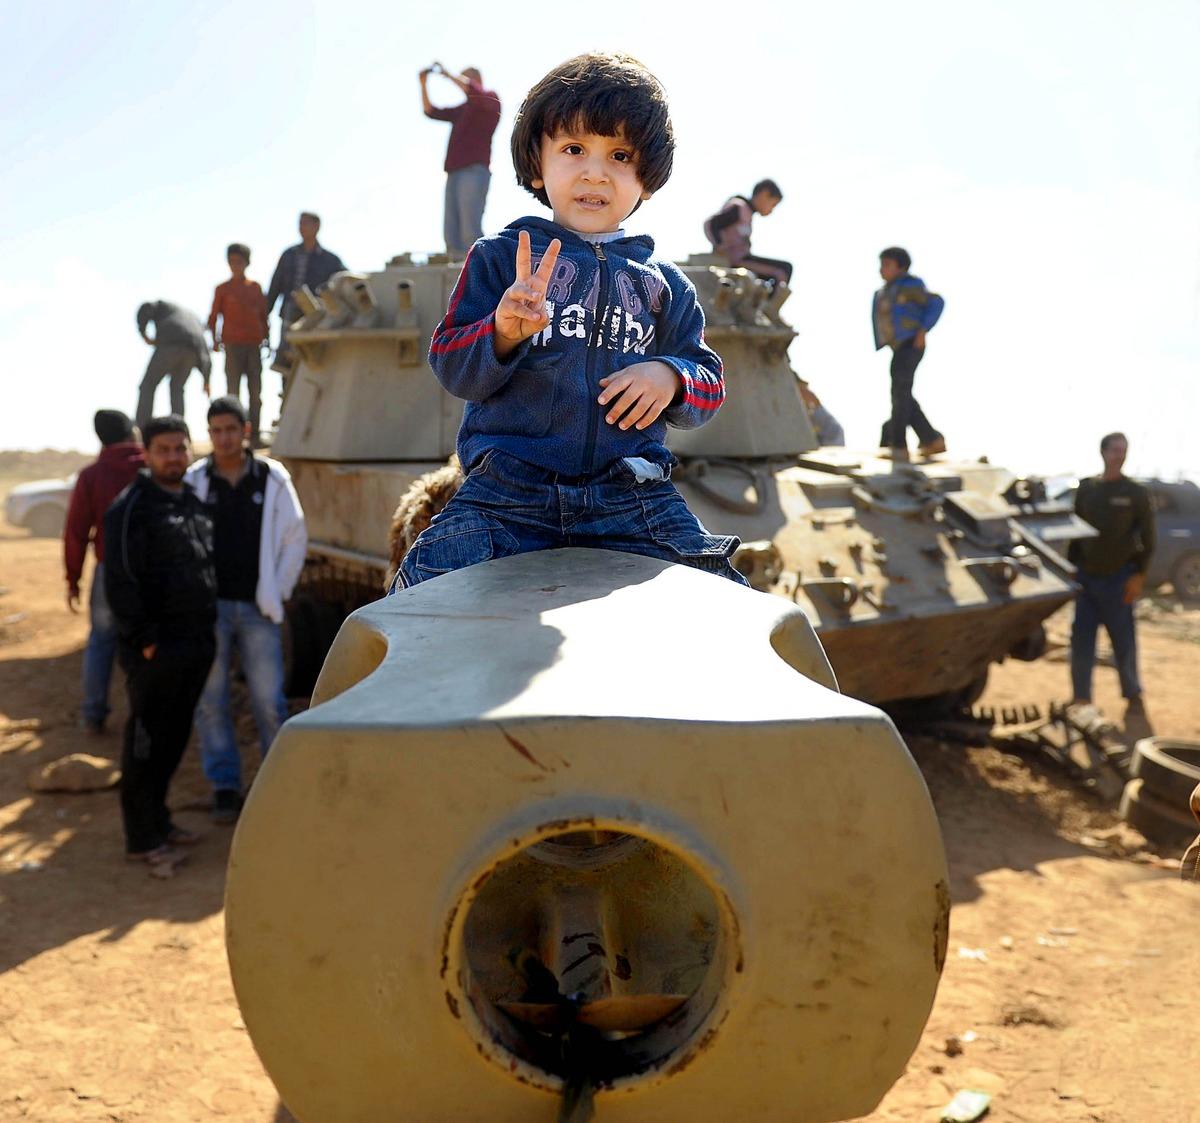 stålskelett i öknen Den lille pojken lyfts upp på kanonröret till en utbränd stridsvagn av sin pappa. Invånarna klänger på, och tar kort på, det som återstår av Gaddafis östliga pansardivision efter det franska flyganfallet. |